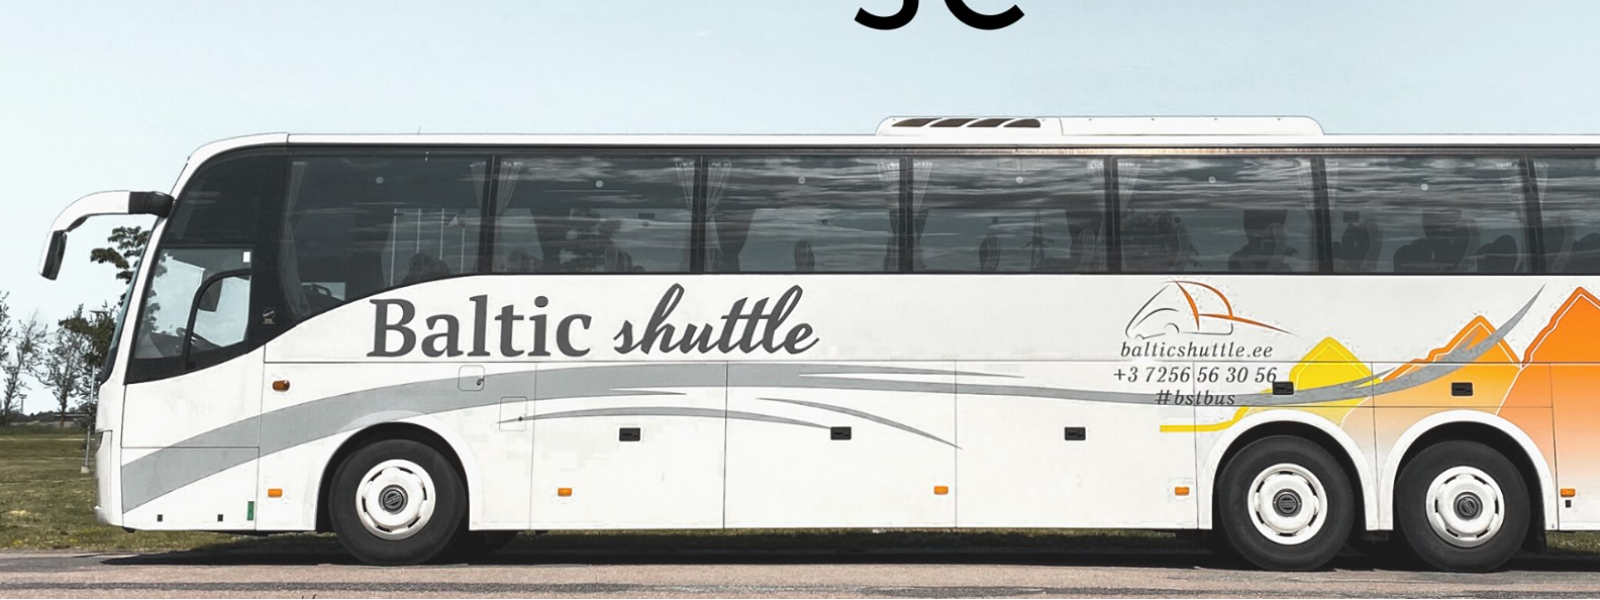 BALTIC SHUTTLE OÜ - Sõitjatevedu, reisibuss, reiside teenus, bussiliinid, reisid, tellimusveod, bussiliinid, reisijate v...